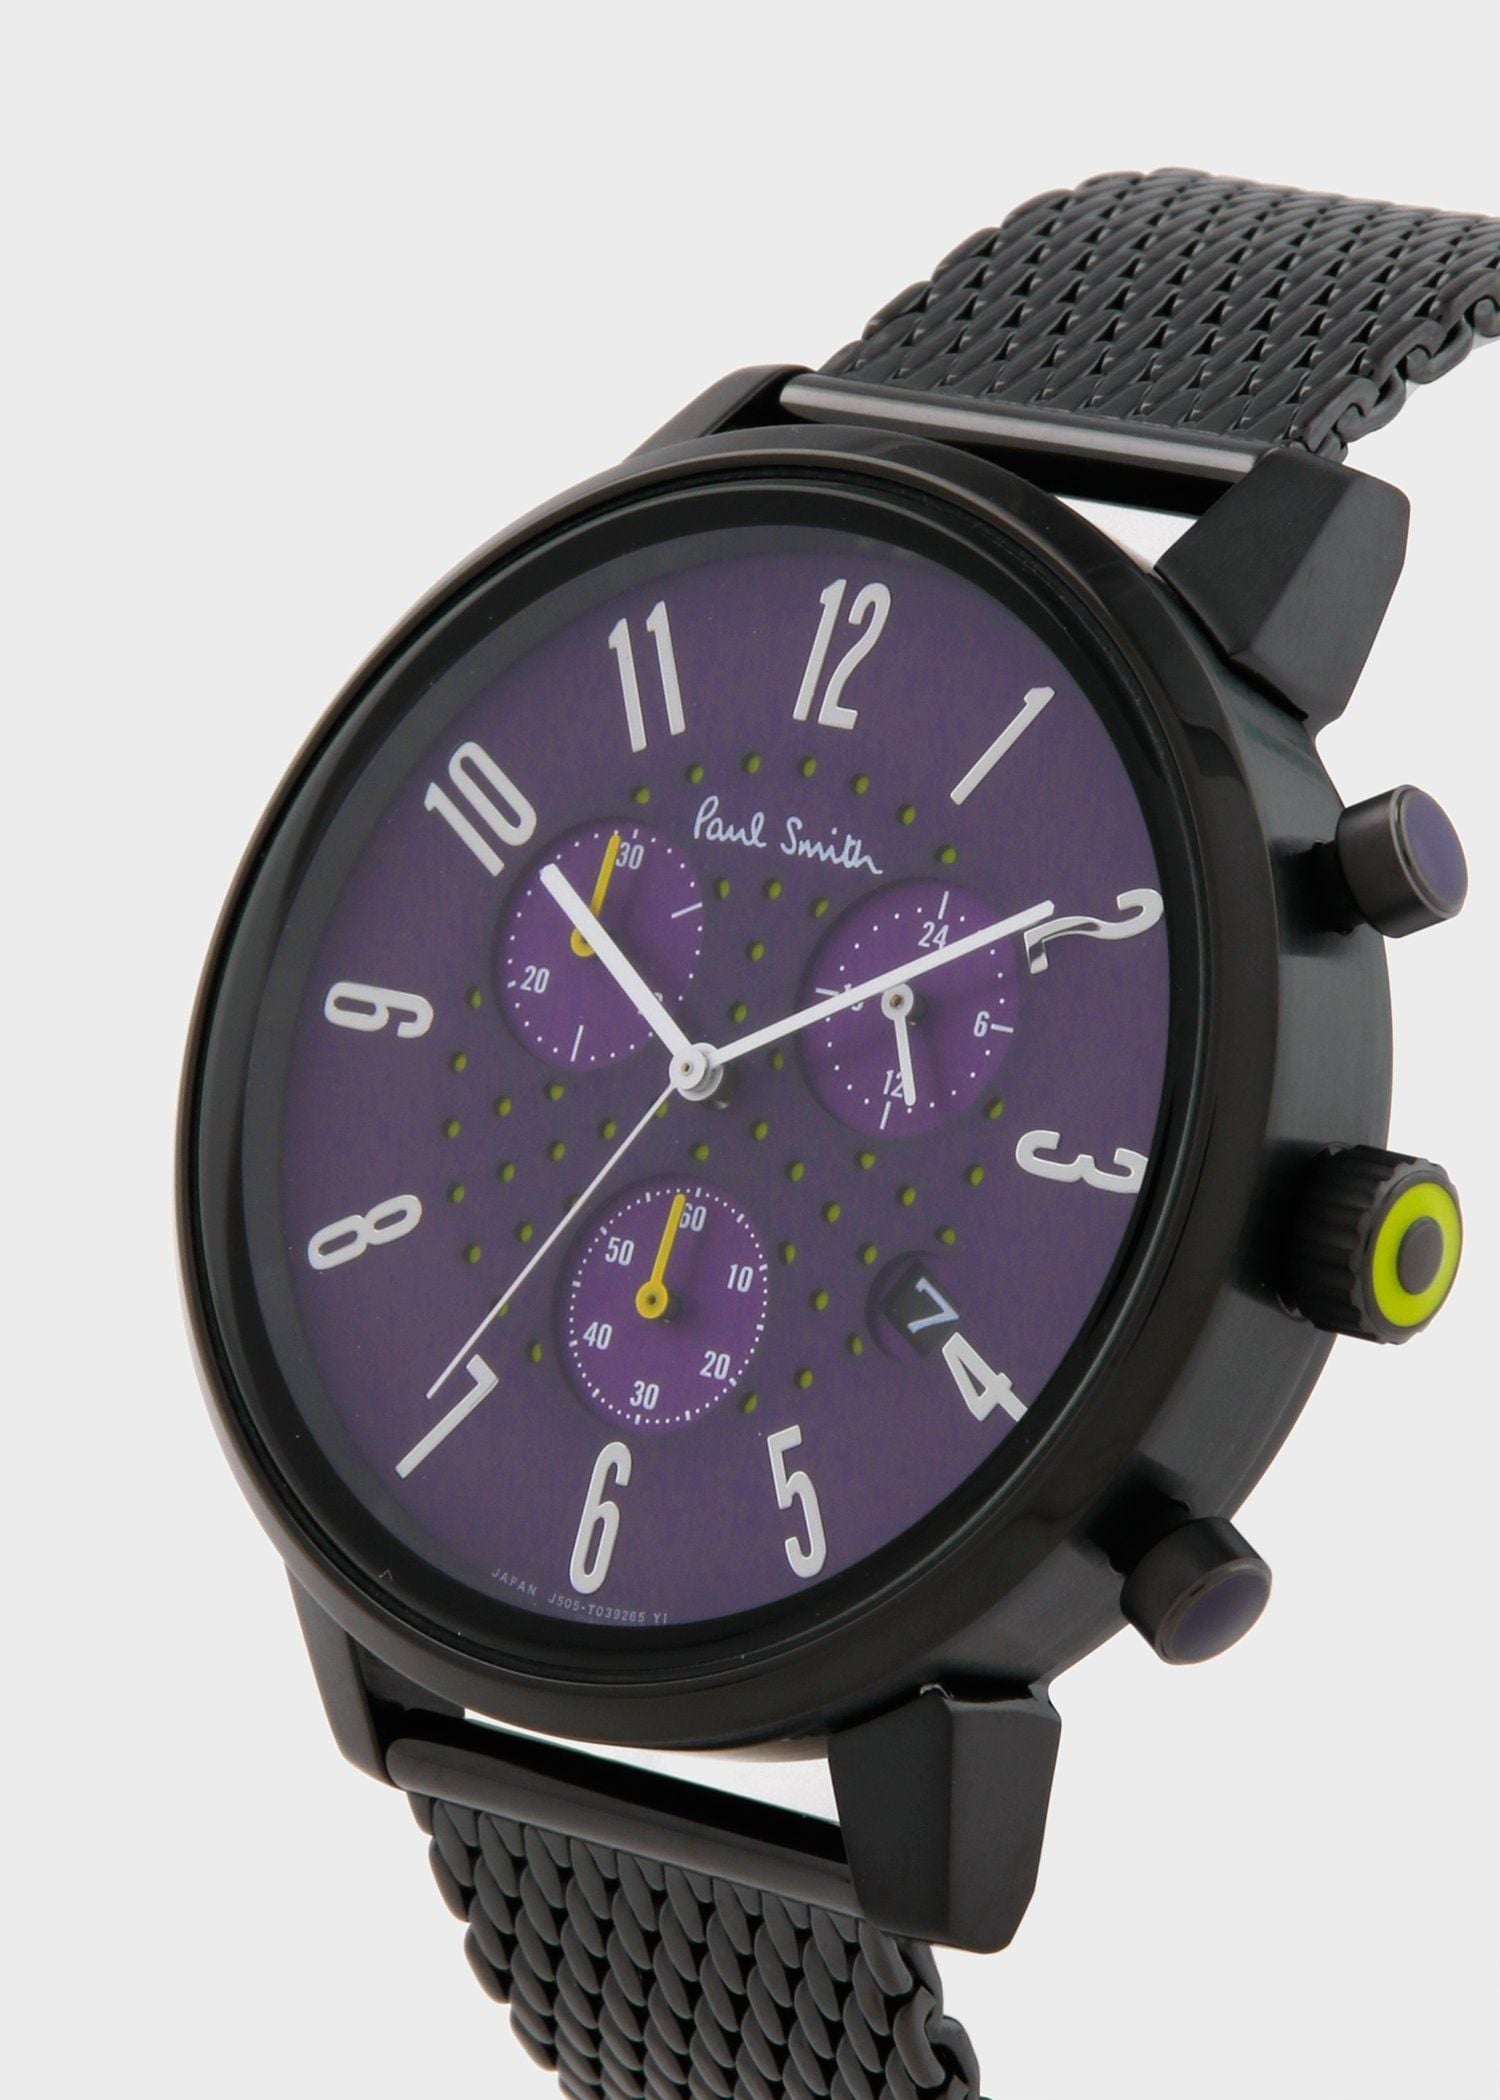 ポールスミス クロノ ブラック メンズ腕時計 J505